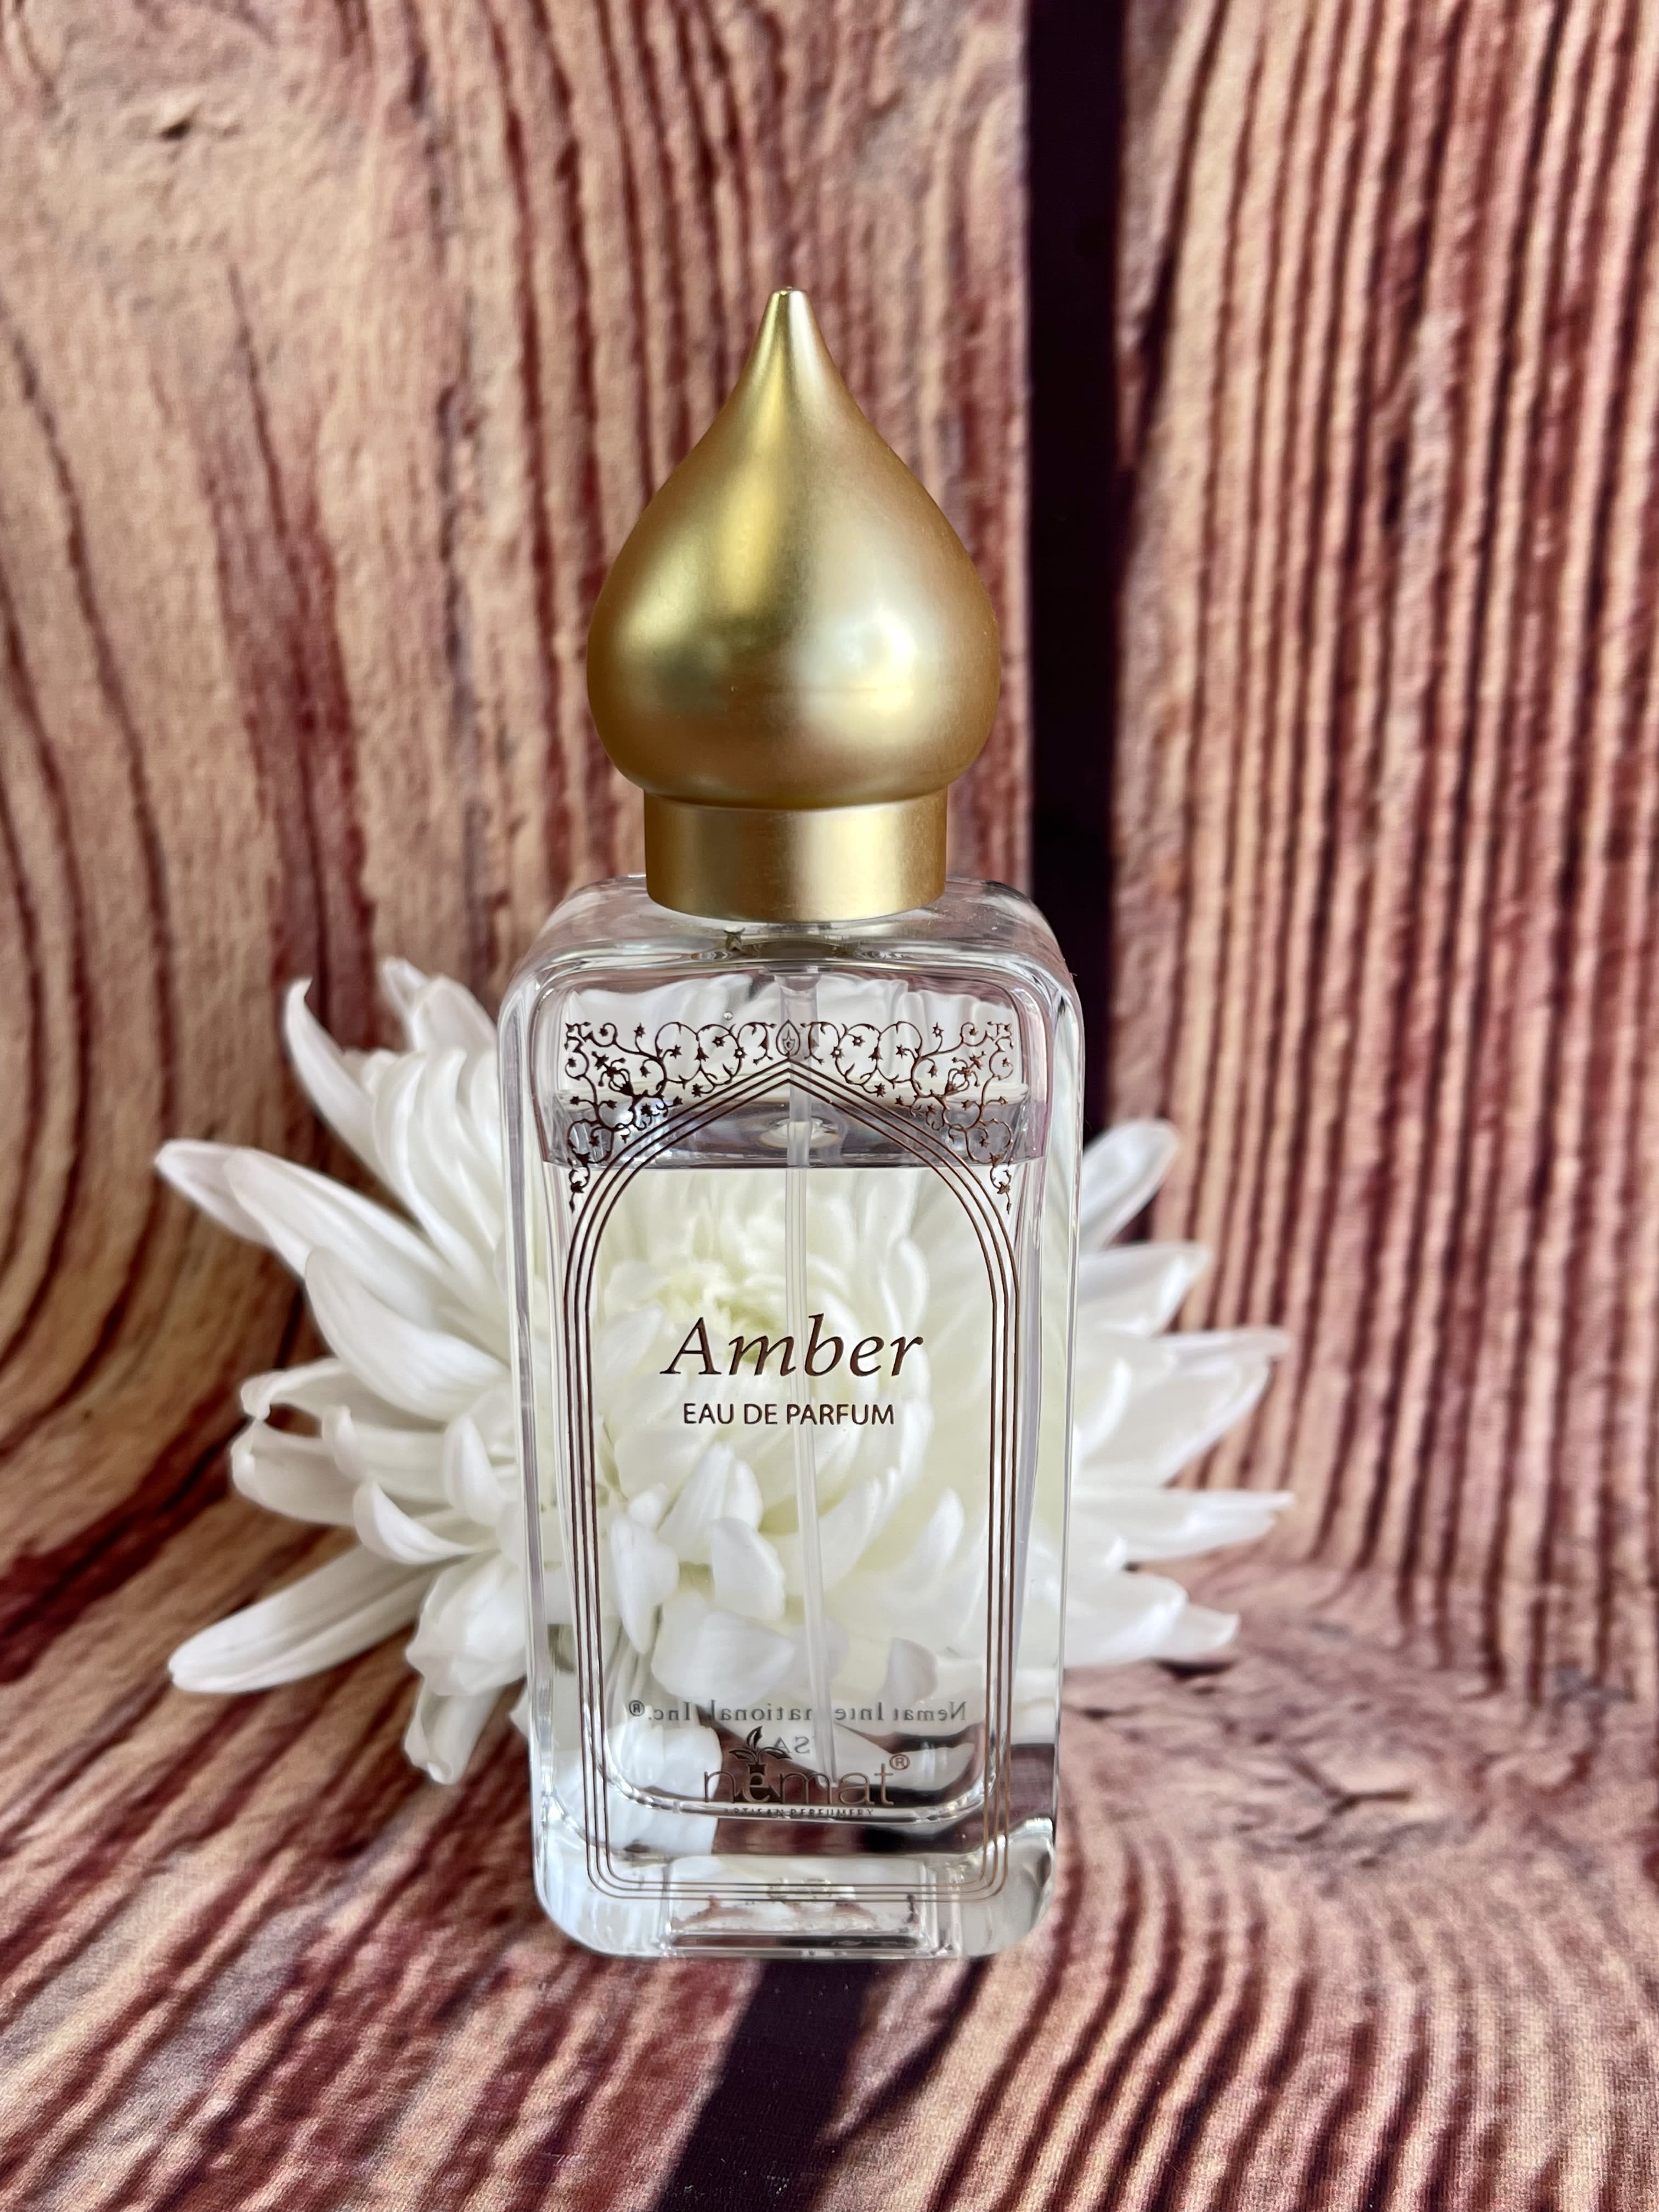 Nemat Amber Fragrance Oil - 10 mL Roll On